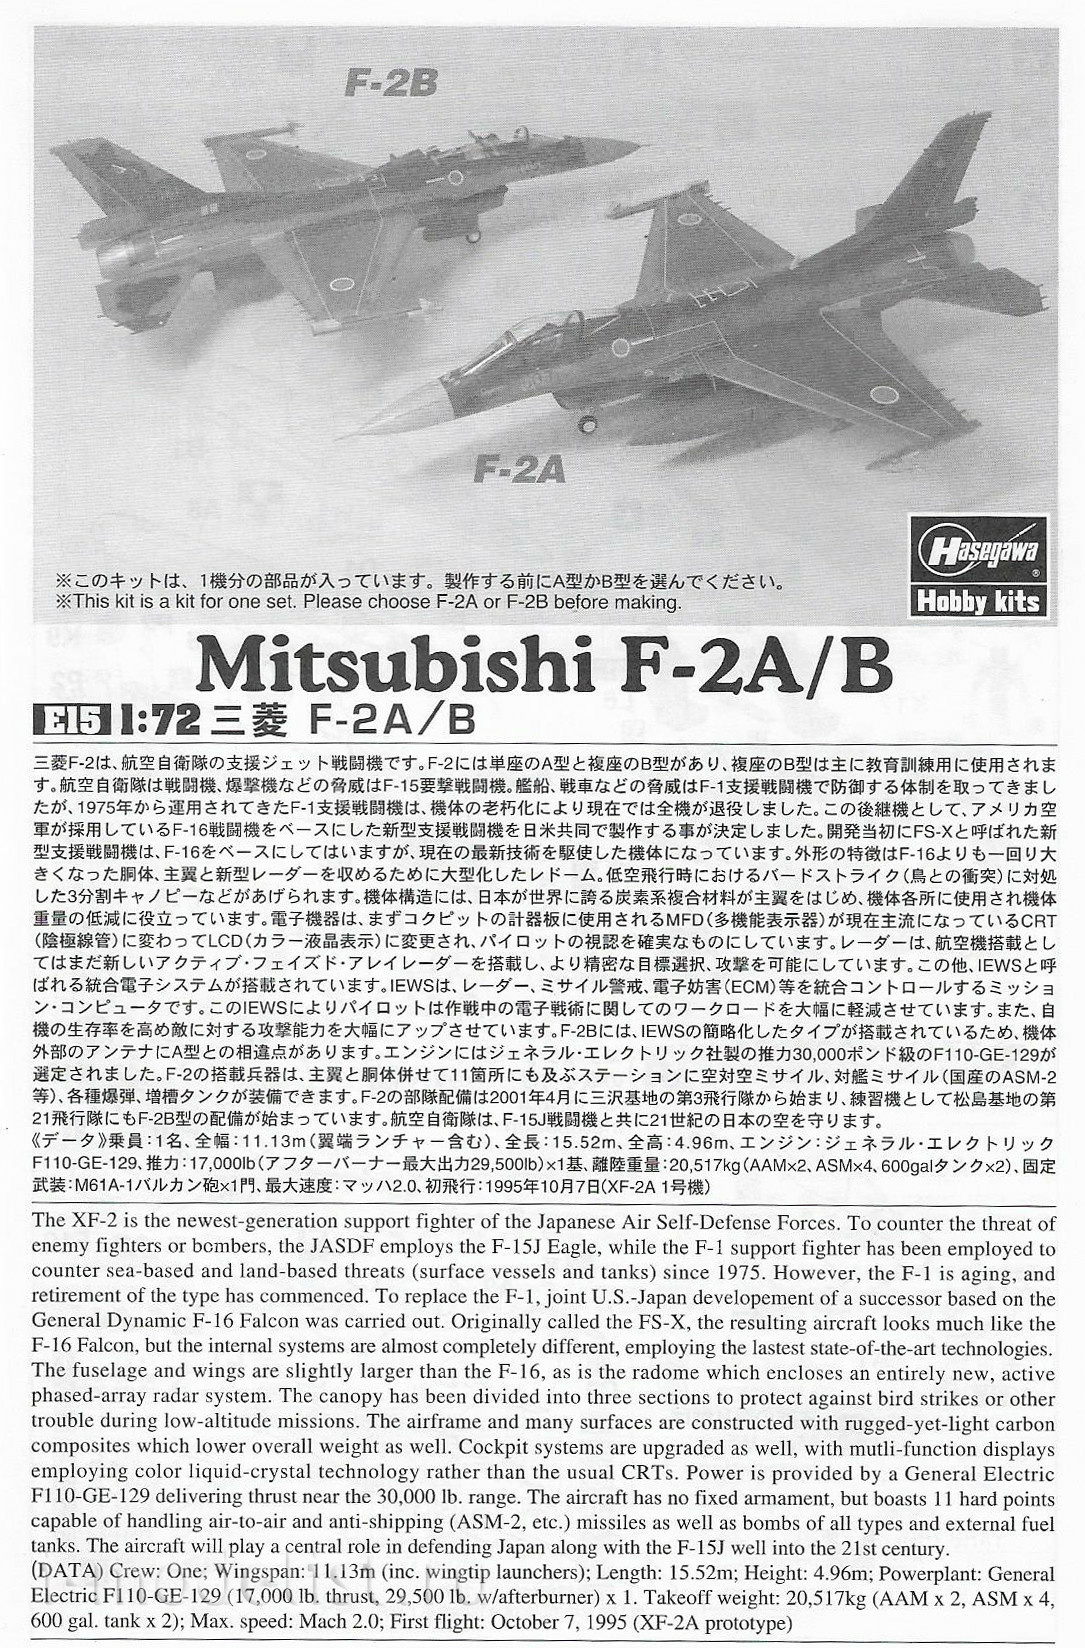 00545 Hasegawa 1/72 Mitsubishi F-2A/B aircraft (J. A. S. D. F. SUPPORT FIGHTER)